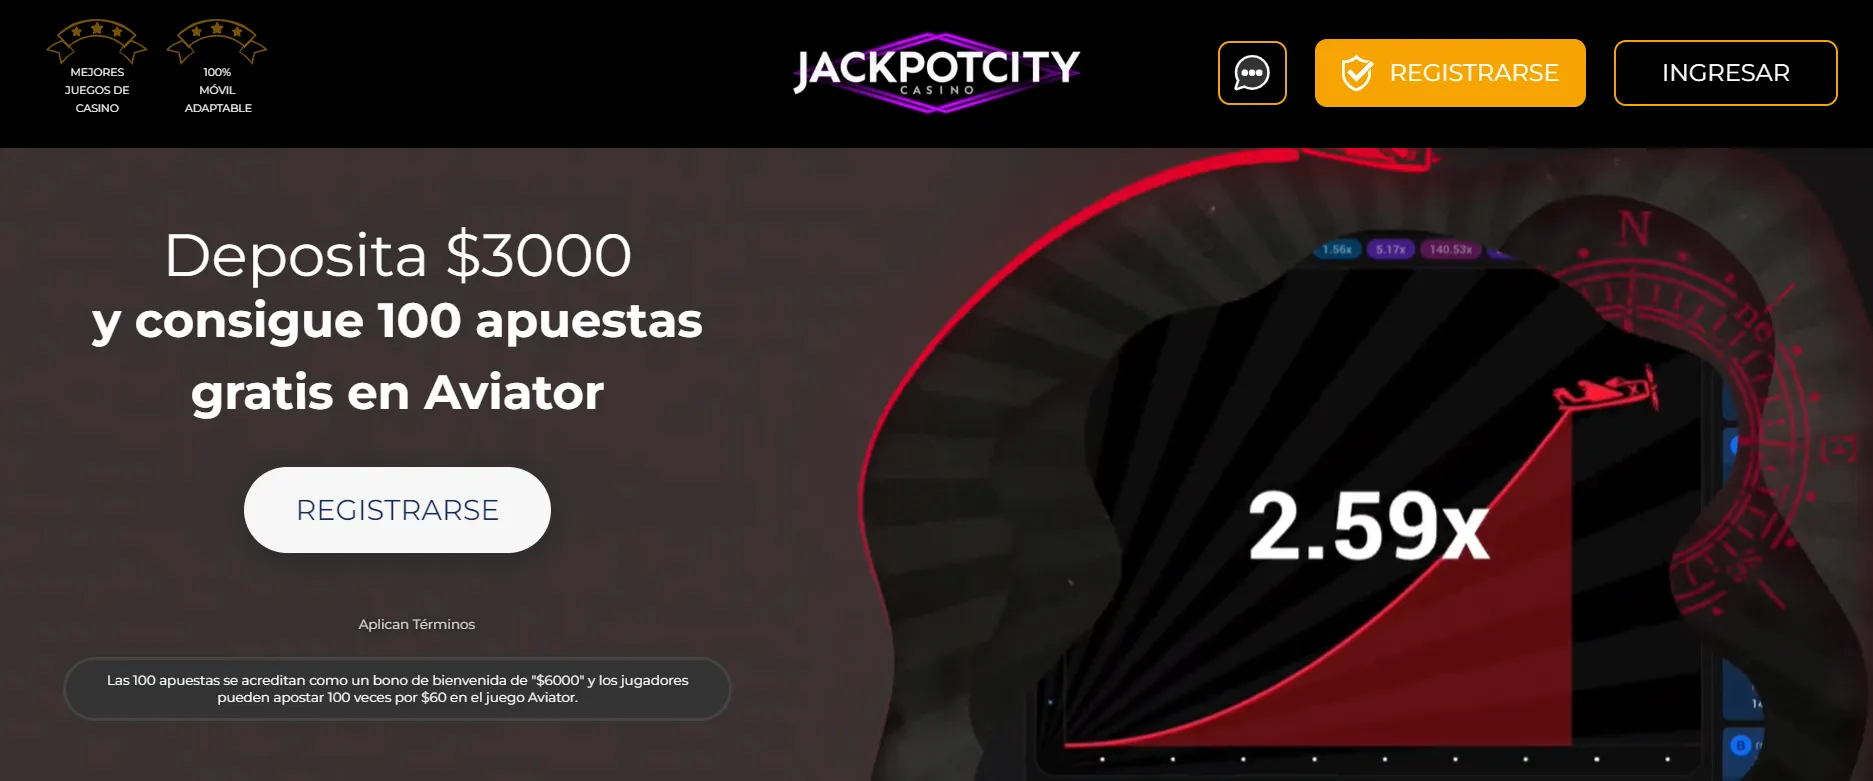 calificaciones casinos online jackpotcity